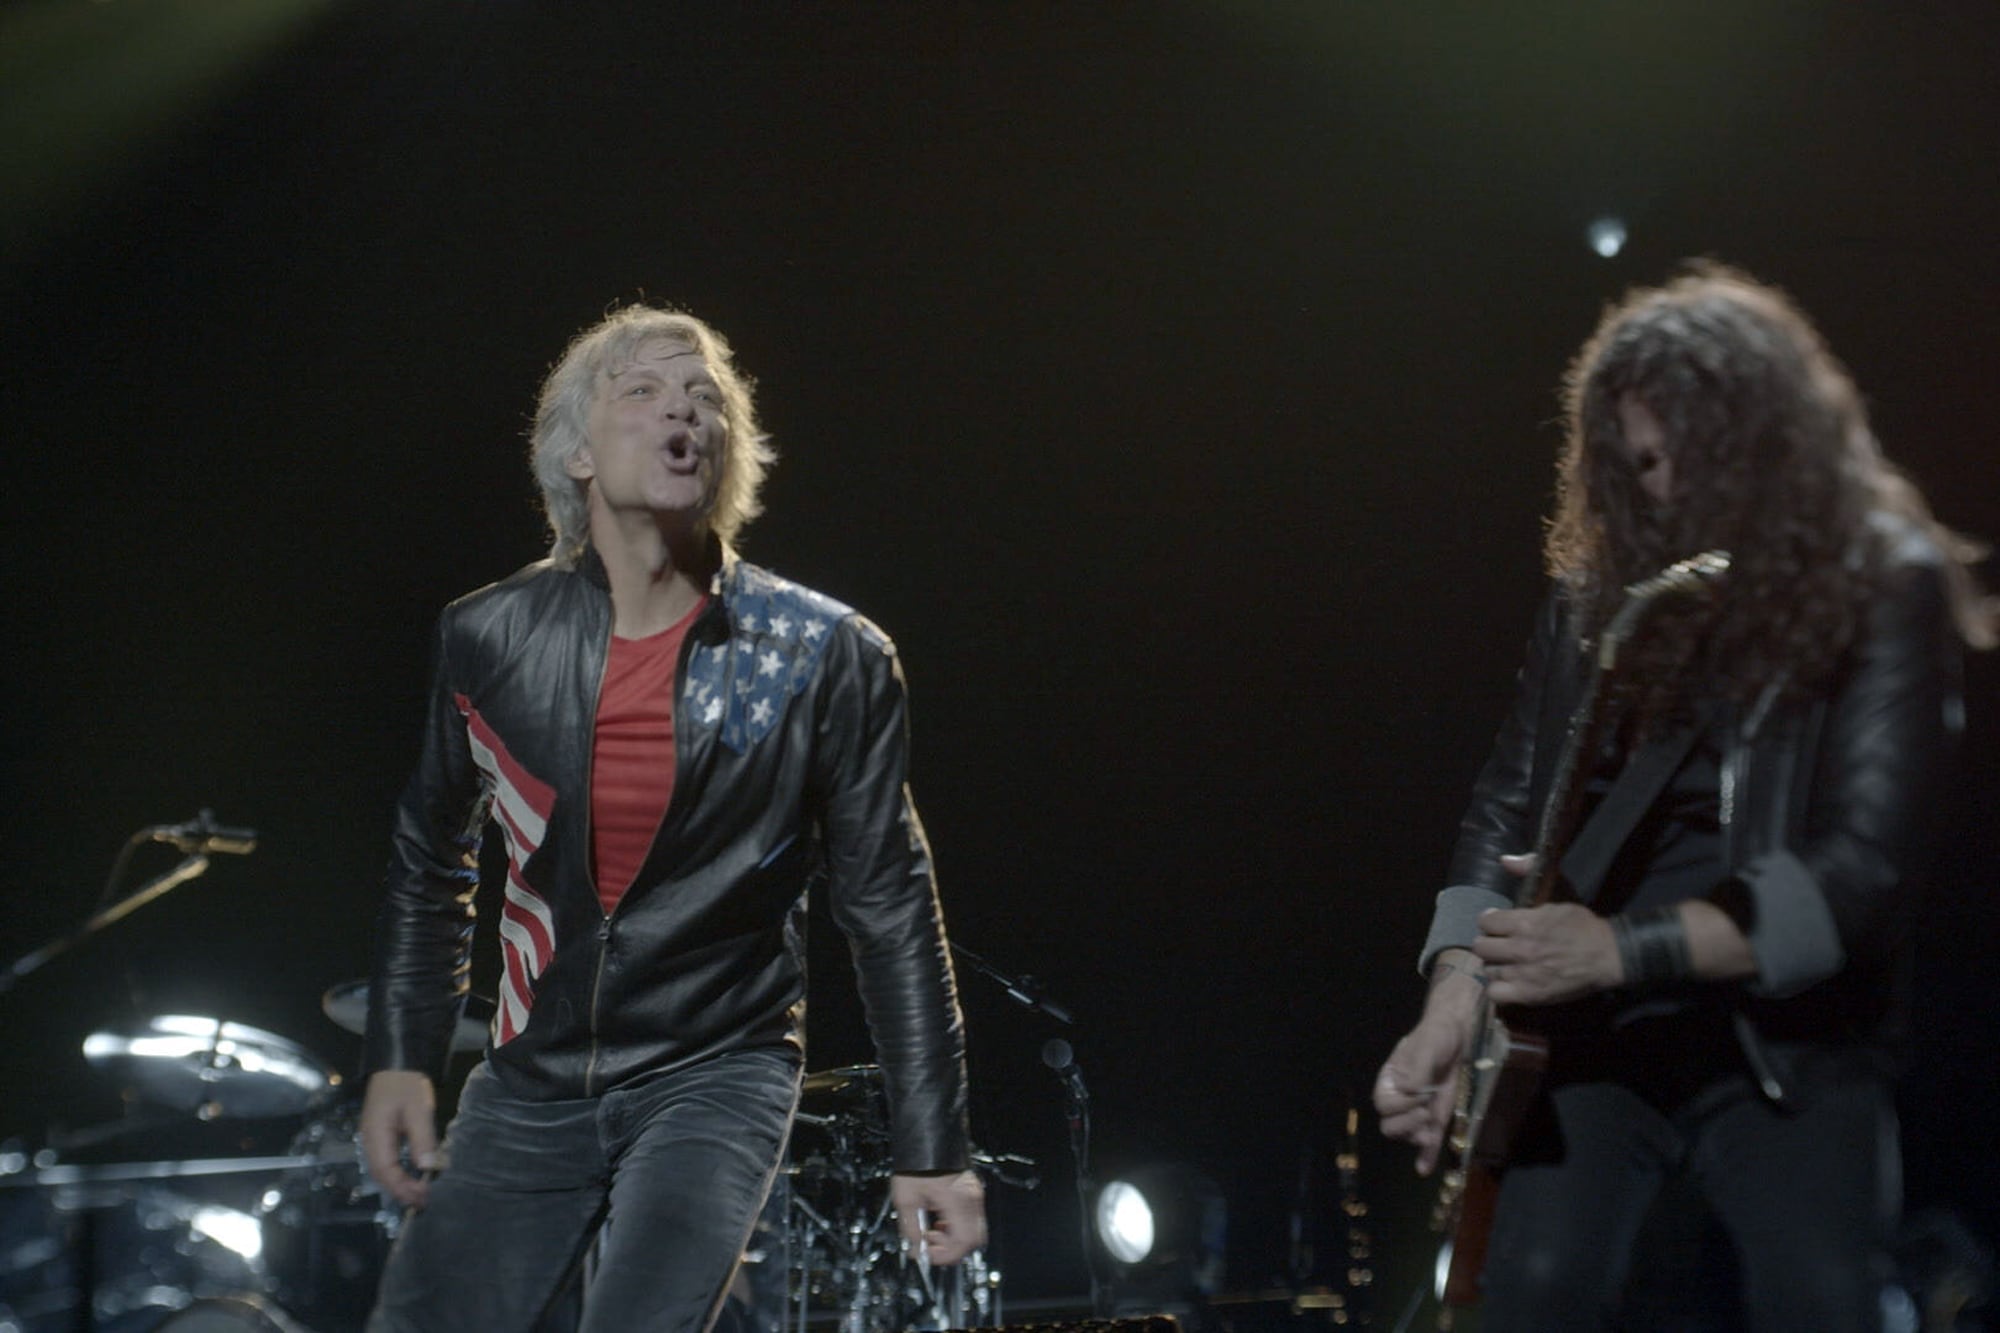 Jon Bon Jovi hace racconto y sigue adelante con su carrera como líder de una de las bandas que revolucionó la escena rockera hacia fines de los 80